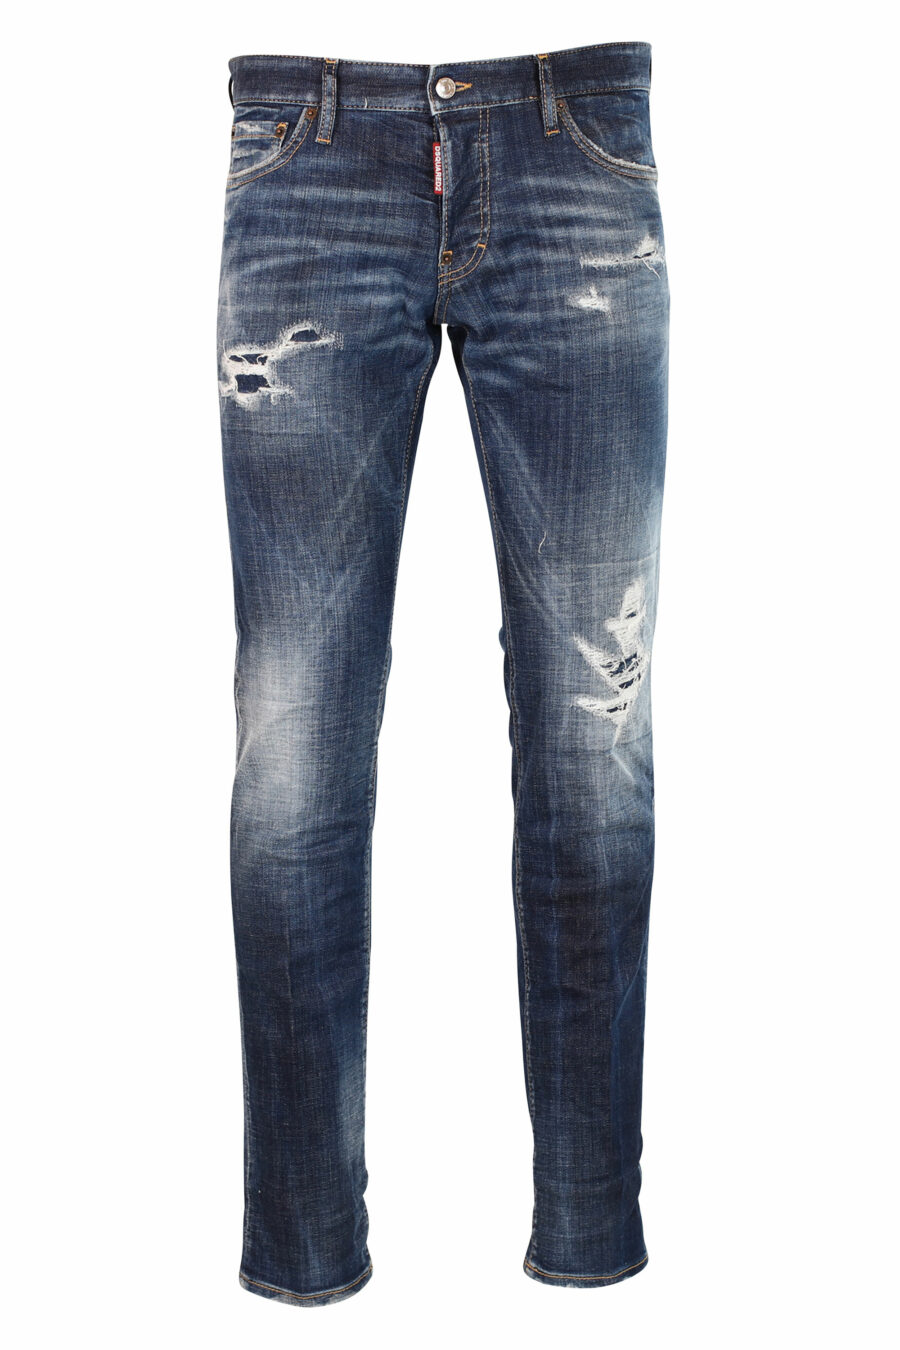 Calças de ganga slim "Slim jean" azul semi-desgastadas com rasgões - Fotos 8052134942789